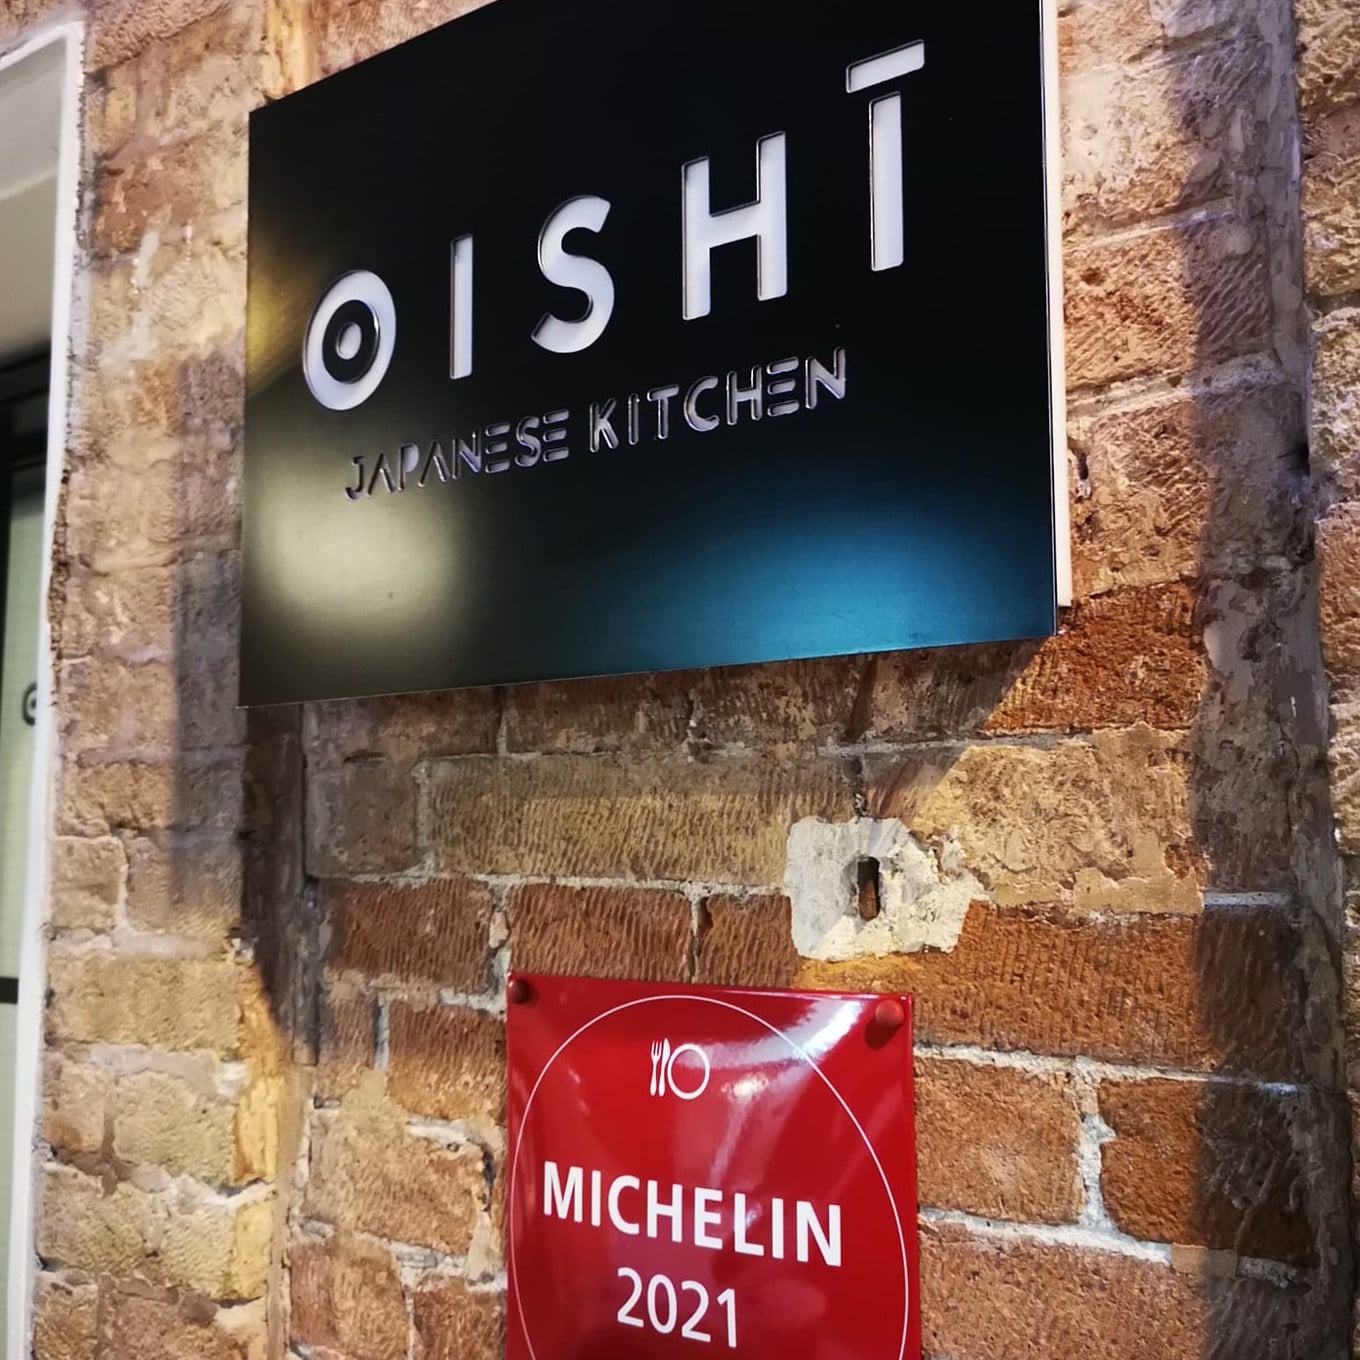 Oishi Japanese Kitchen